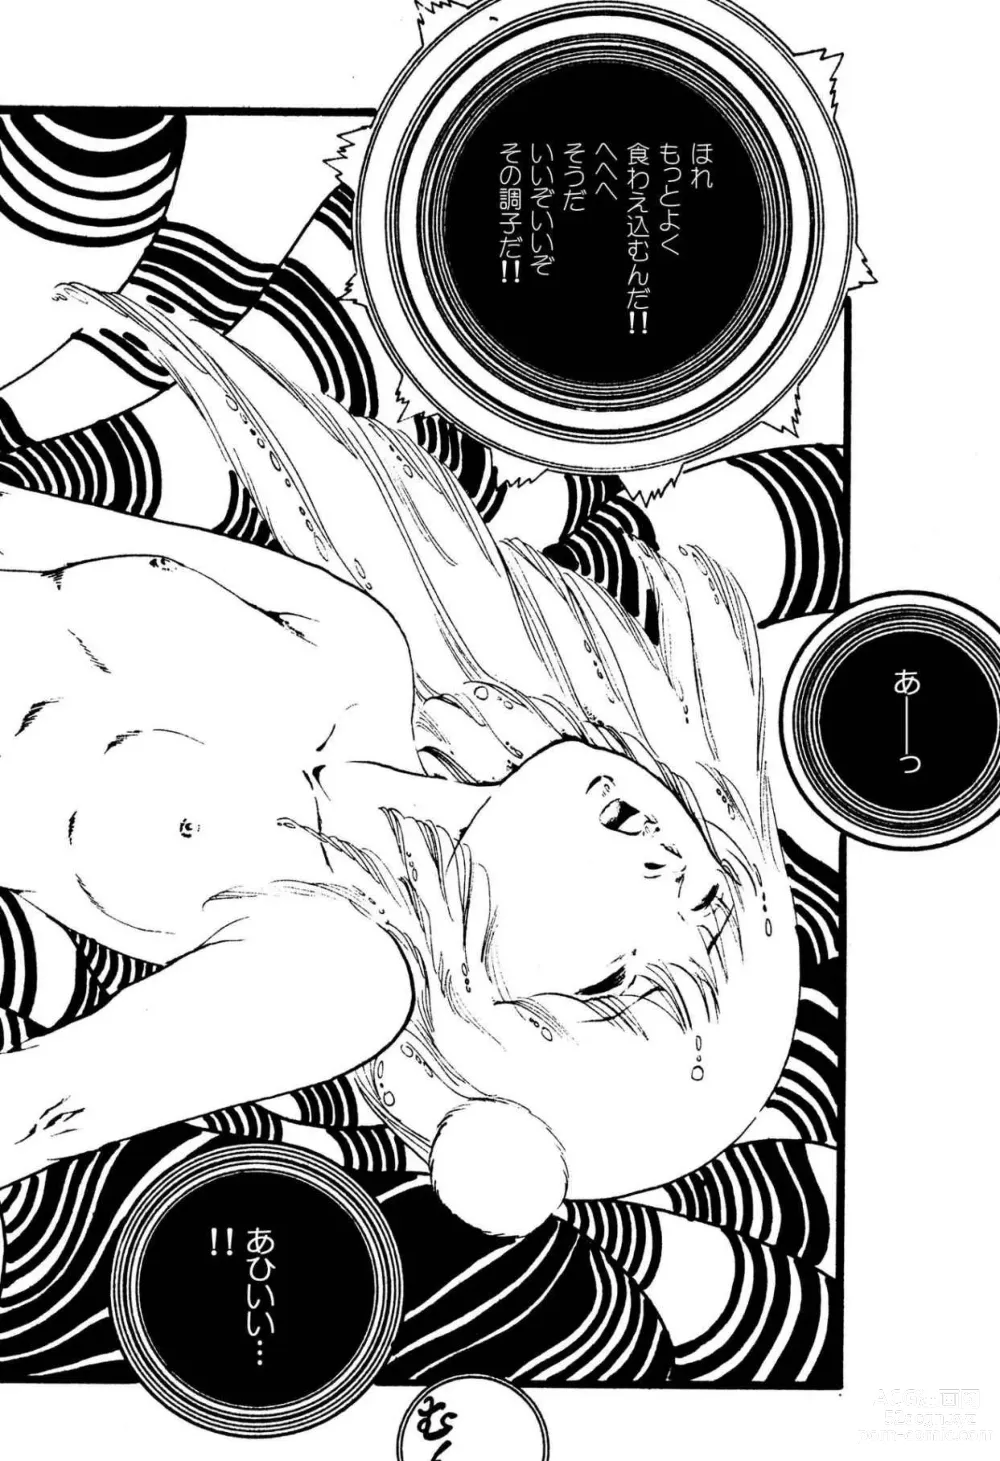 Page 202 of manga Kimamana Yousei